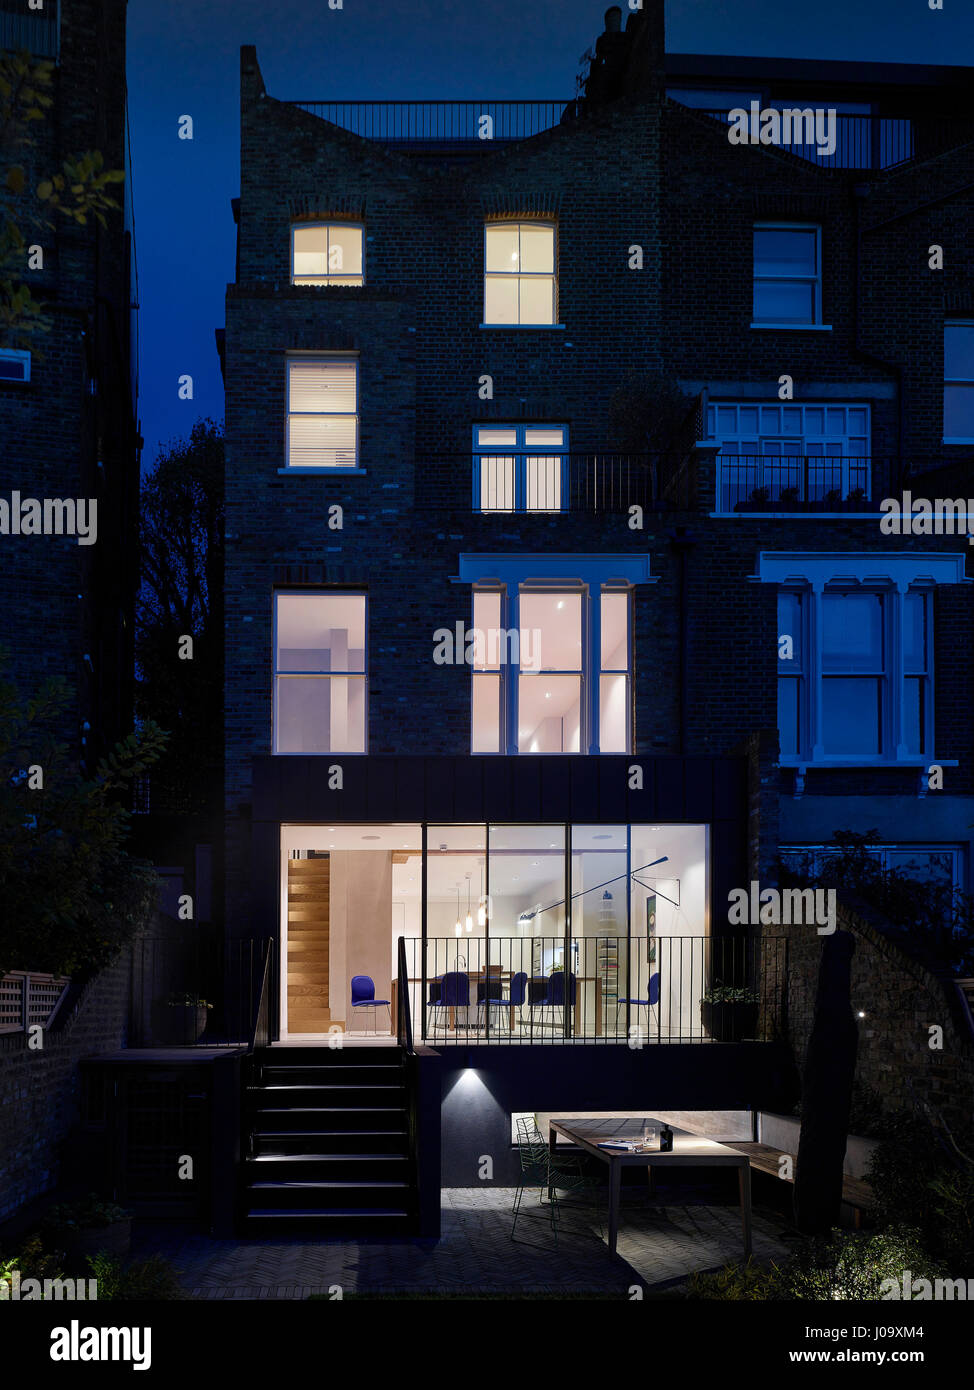 Rückseite des Hauses. Hampstead Teiche House, London, Vereinigtes Königreich. Architekt: Steif + Trevillion Architekten, 2016. Stockfoto